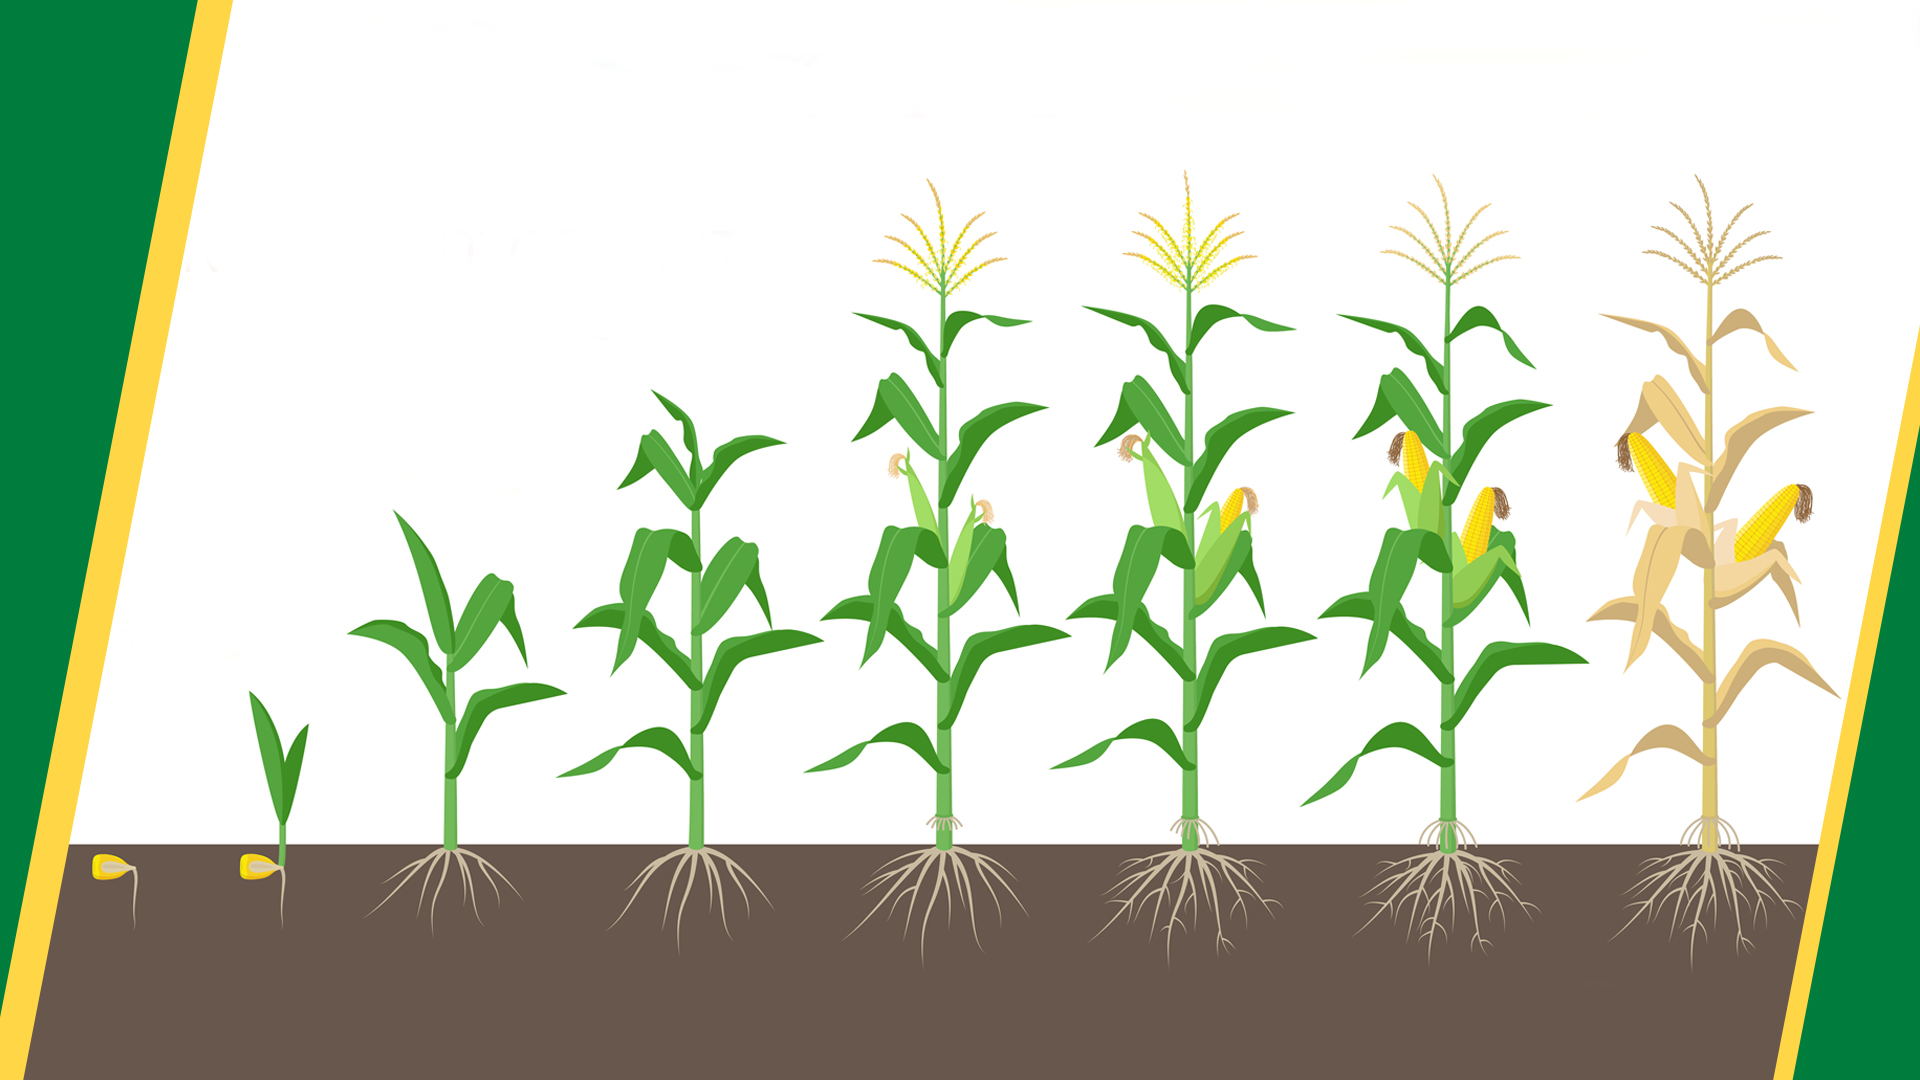 Вирощування кукурудзи